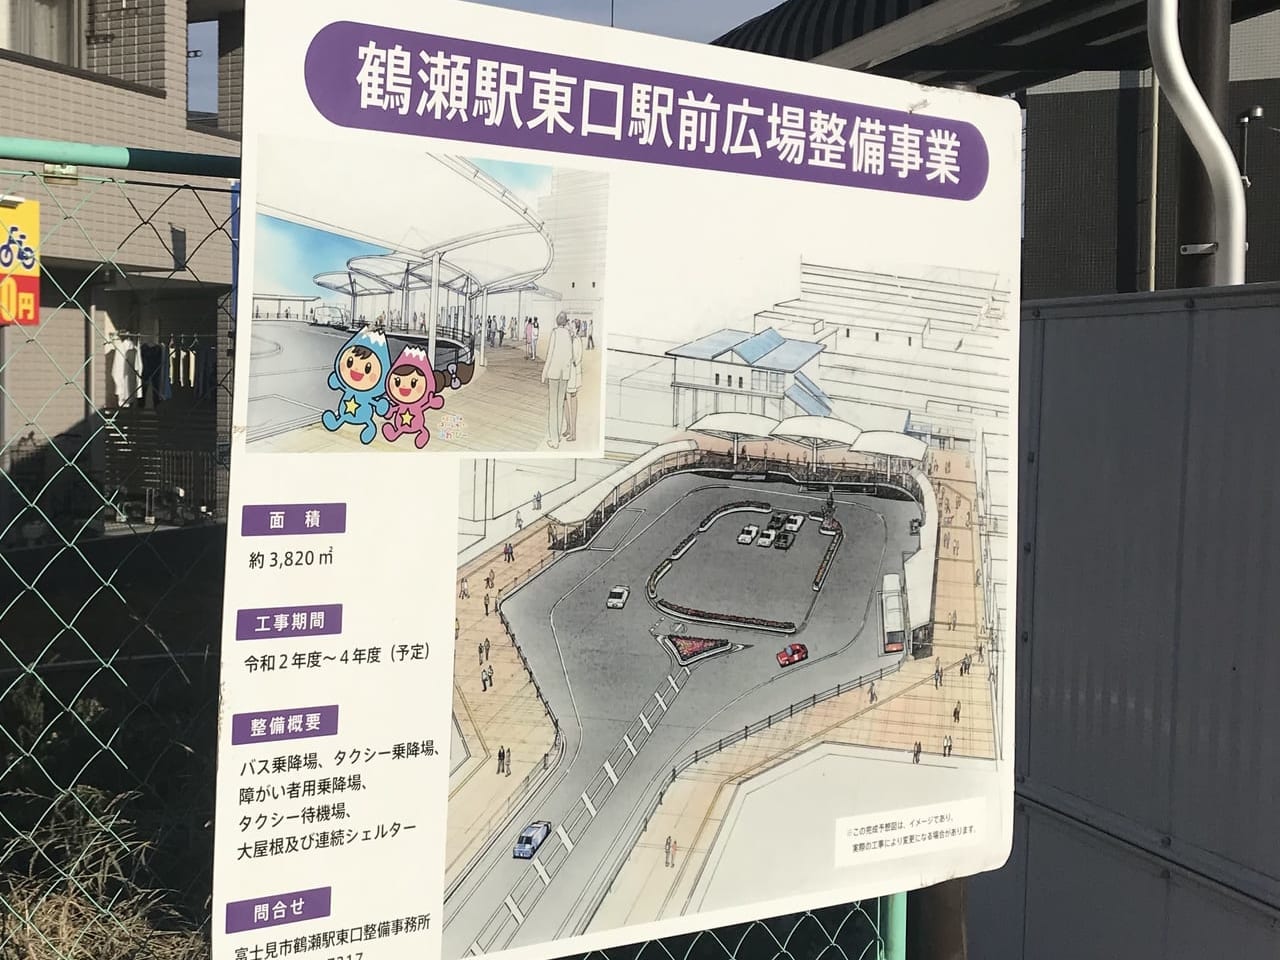 鶴瀬駅東口の駅前広場整備に伴いライフバス乗降場所が移転